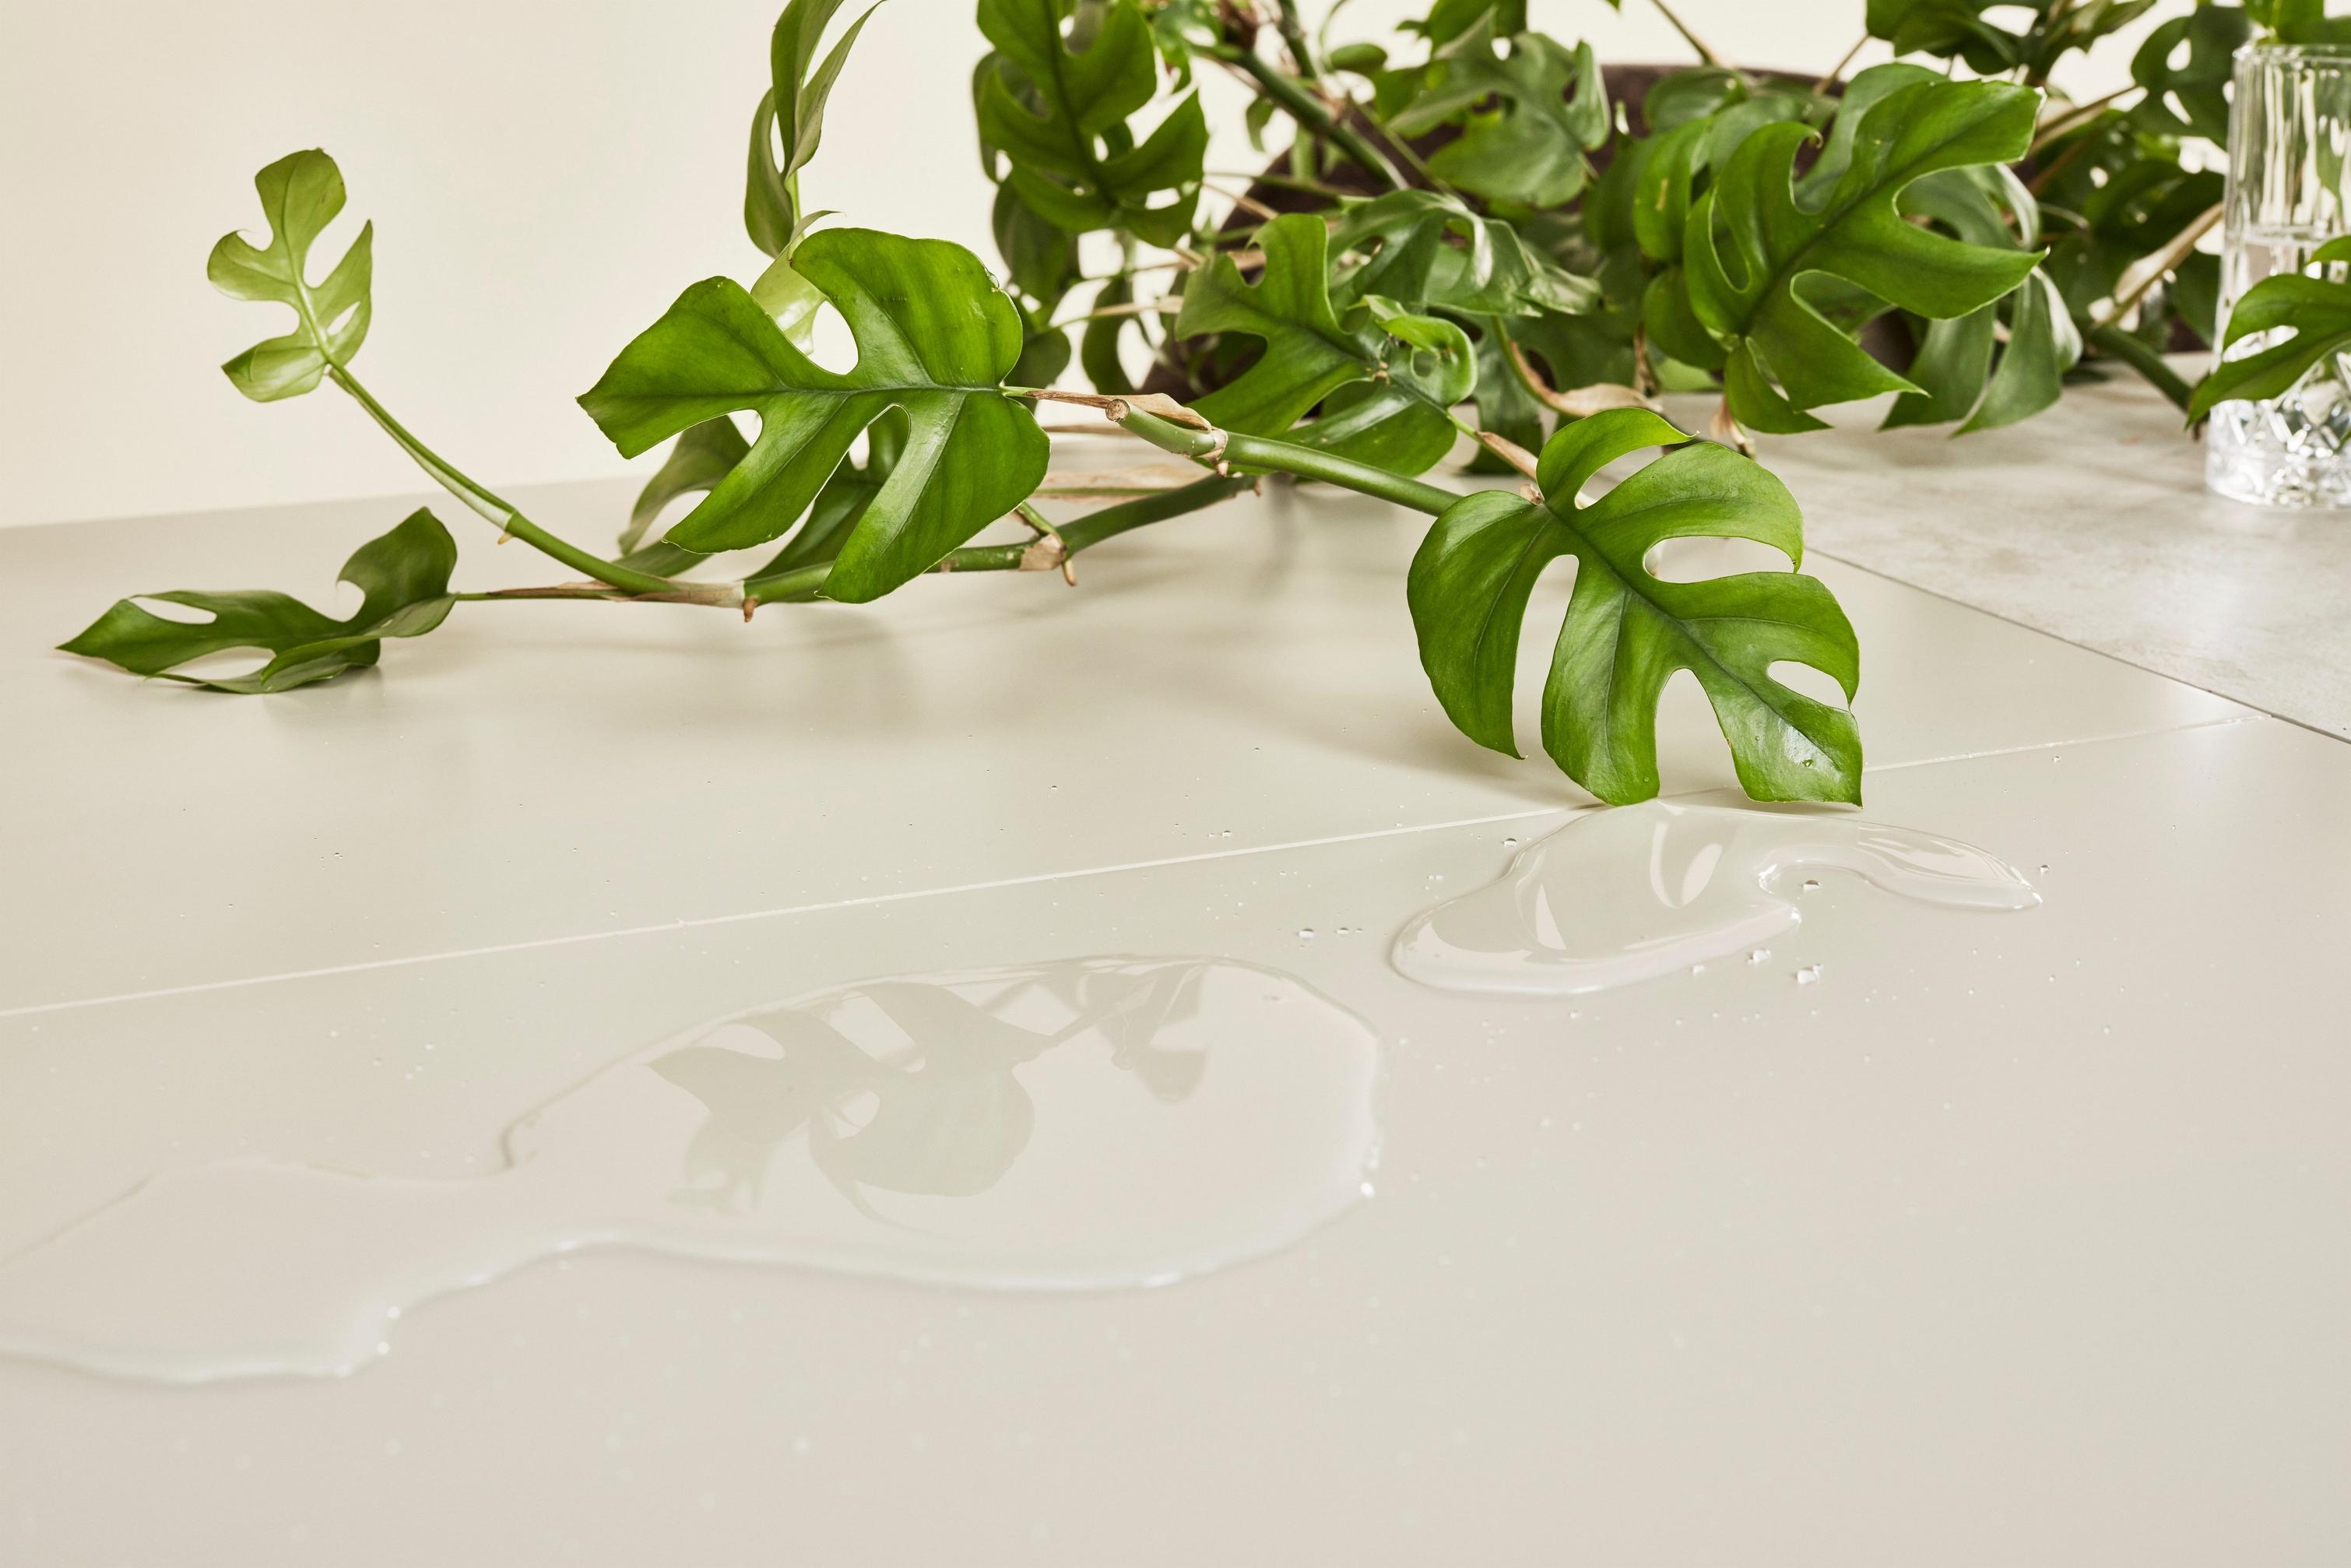 Monstera verde sobre mesa com superfície lacada, com derrame de água límpida refletindo folhas.